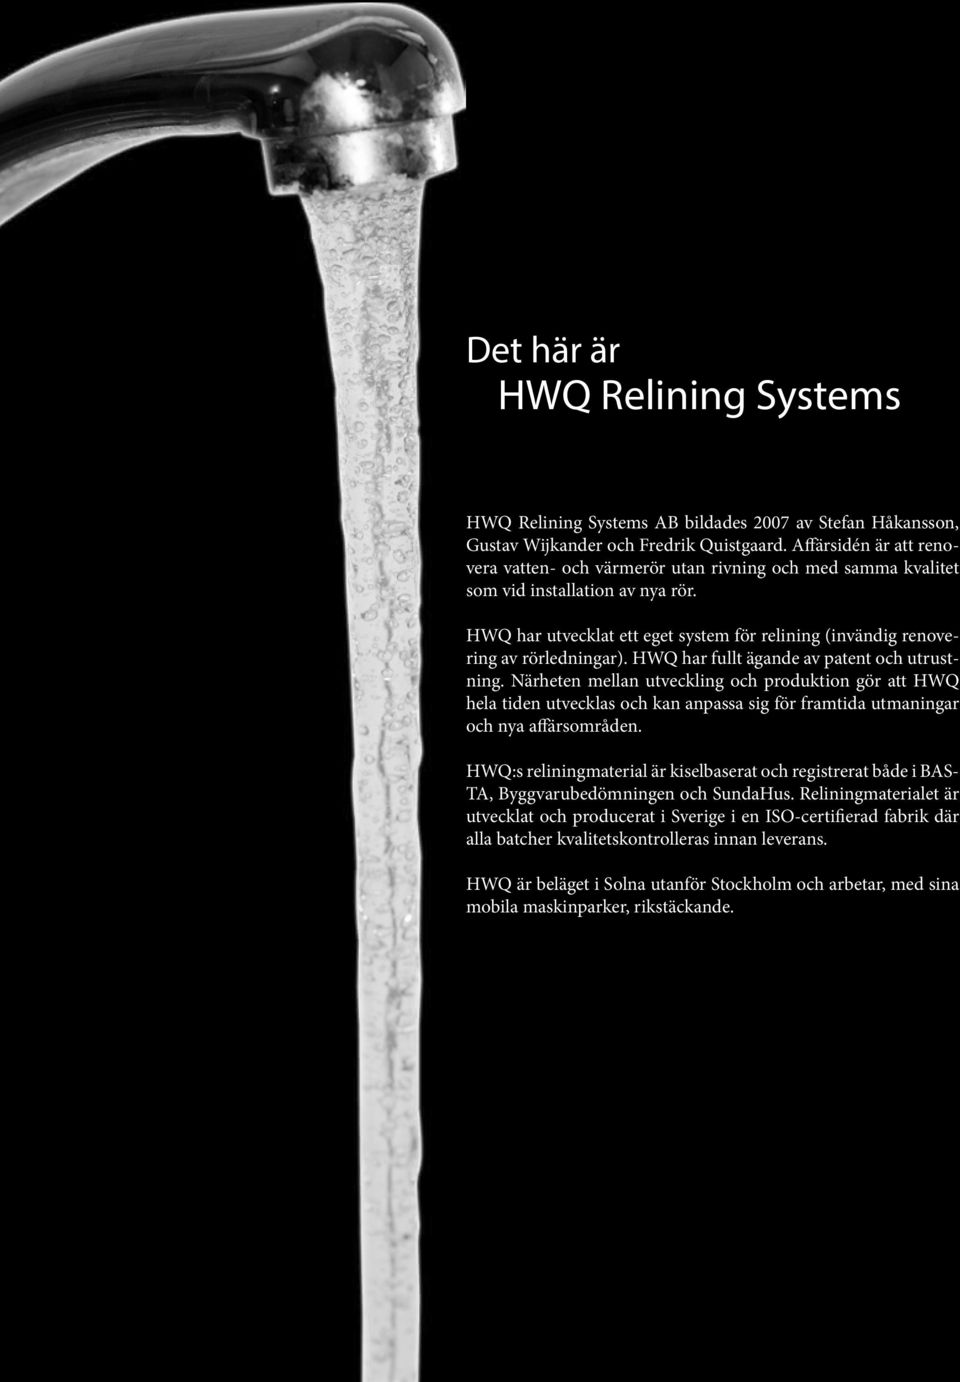 HWQ har utvecklat ett eget system för relining (invändig renovering av rörledningar). HWQ har fullt ägande av patent och utrustning.